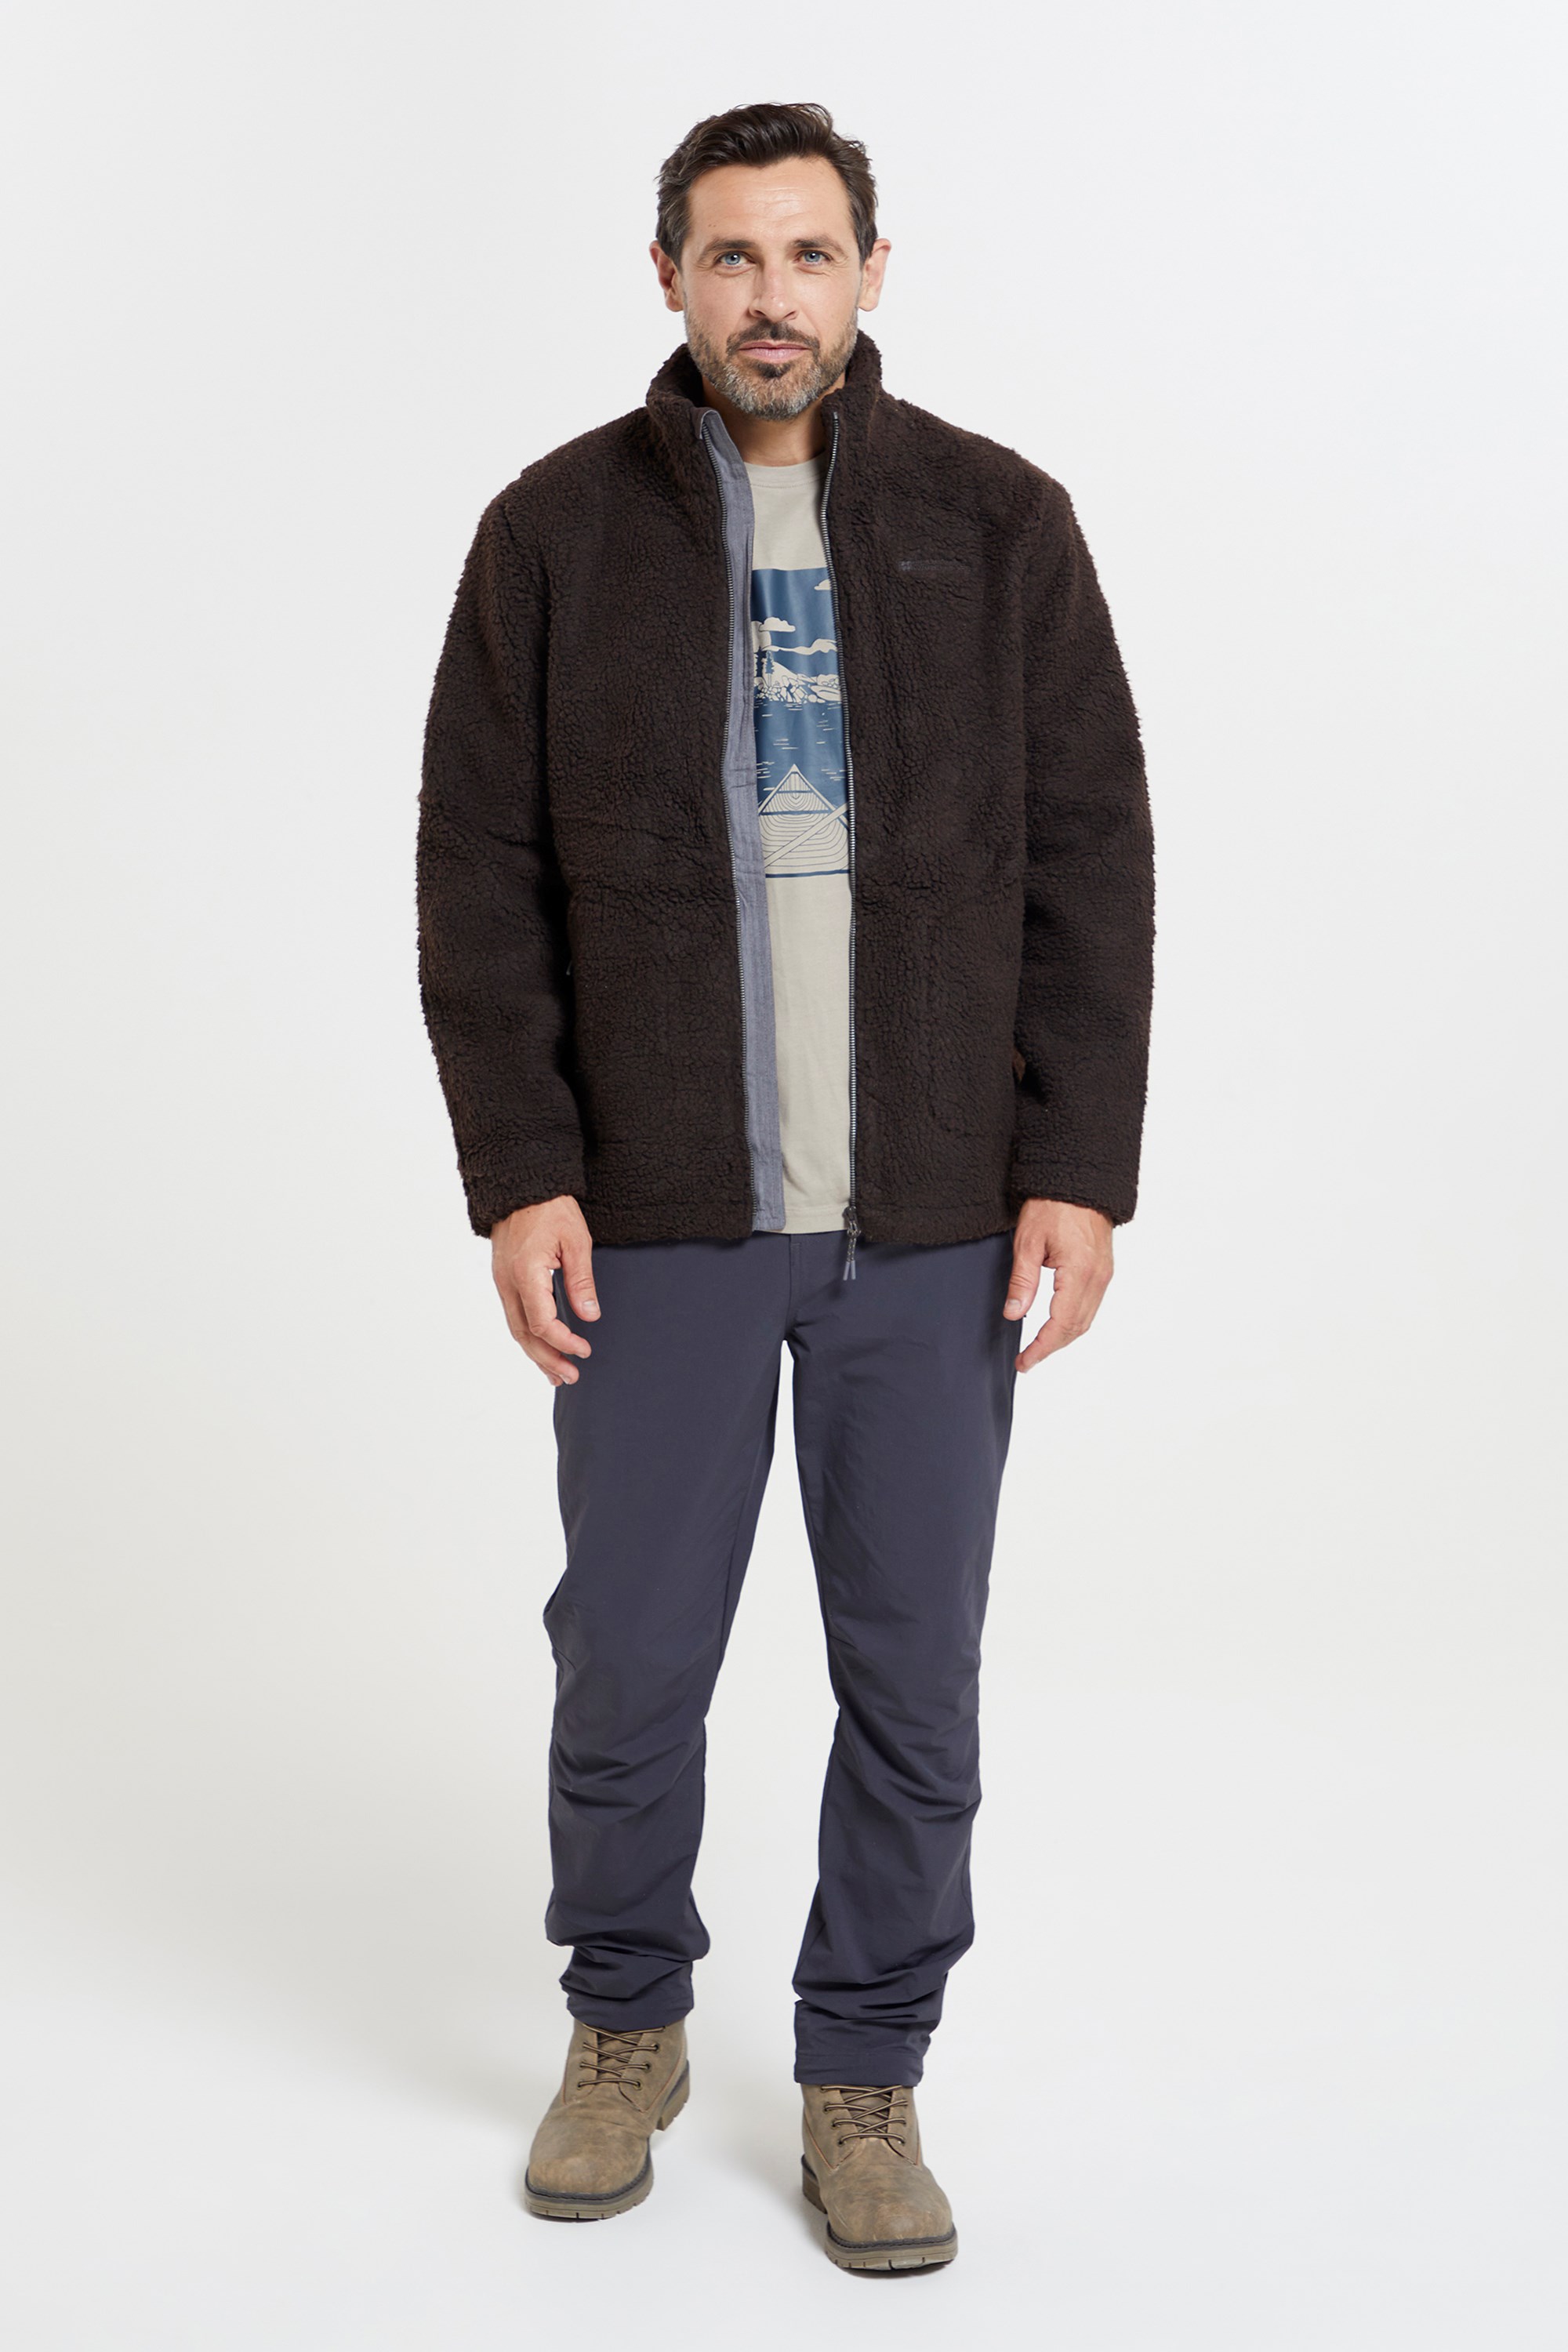 Mountain Warehouse Sherpa Mens Windproof Fleece Jacket - Brown | Size 3XL